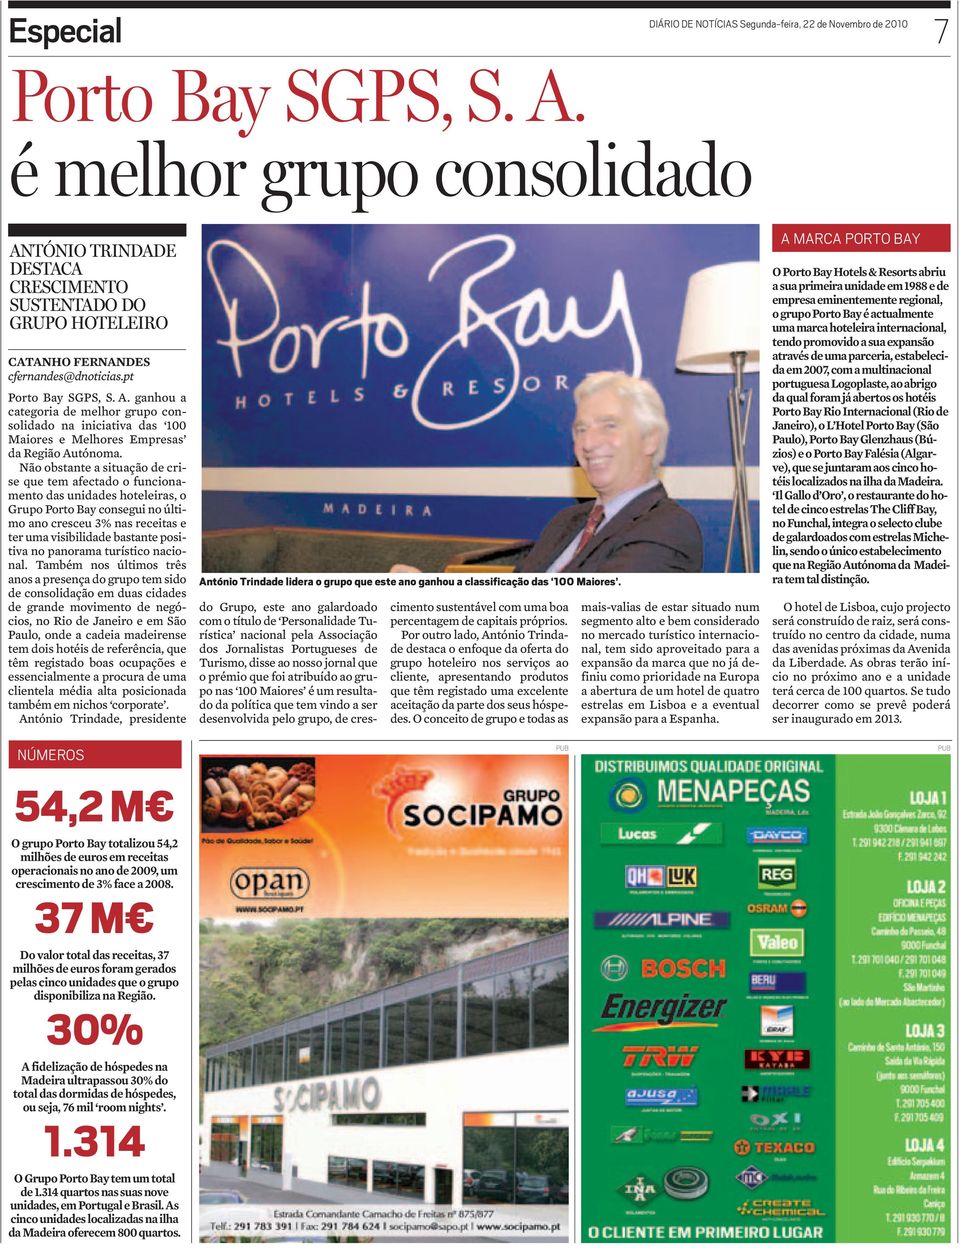 Não obstante a situação de crise que tem afectado o funcionamento das unidades hoteleiras, o Grupo Porto Bay consegui no último ano cresceu % nas receitas e ter uma visibilidade bastante positiva no